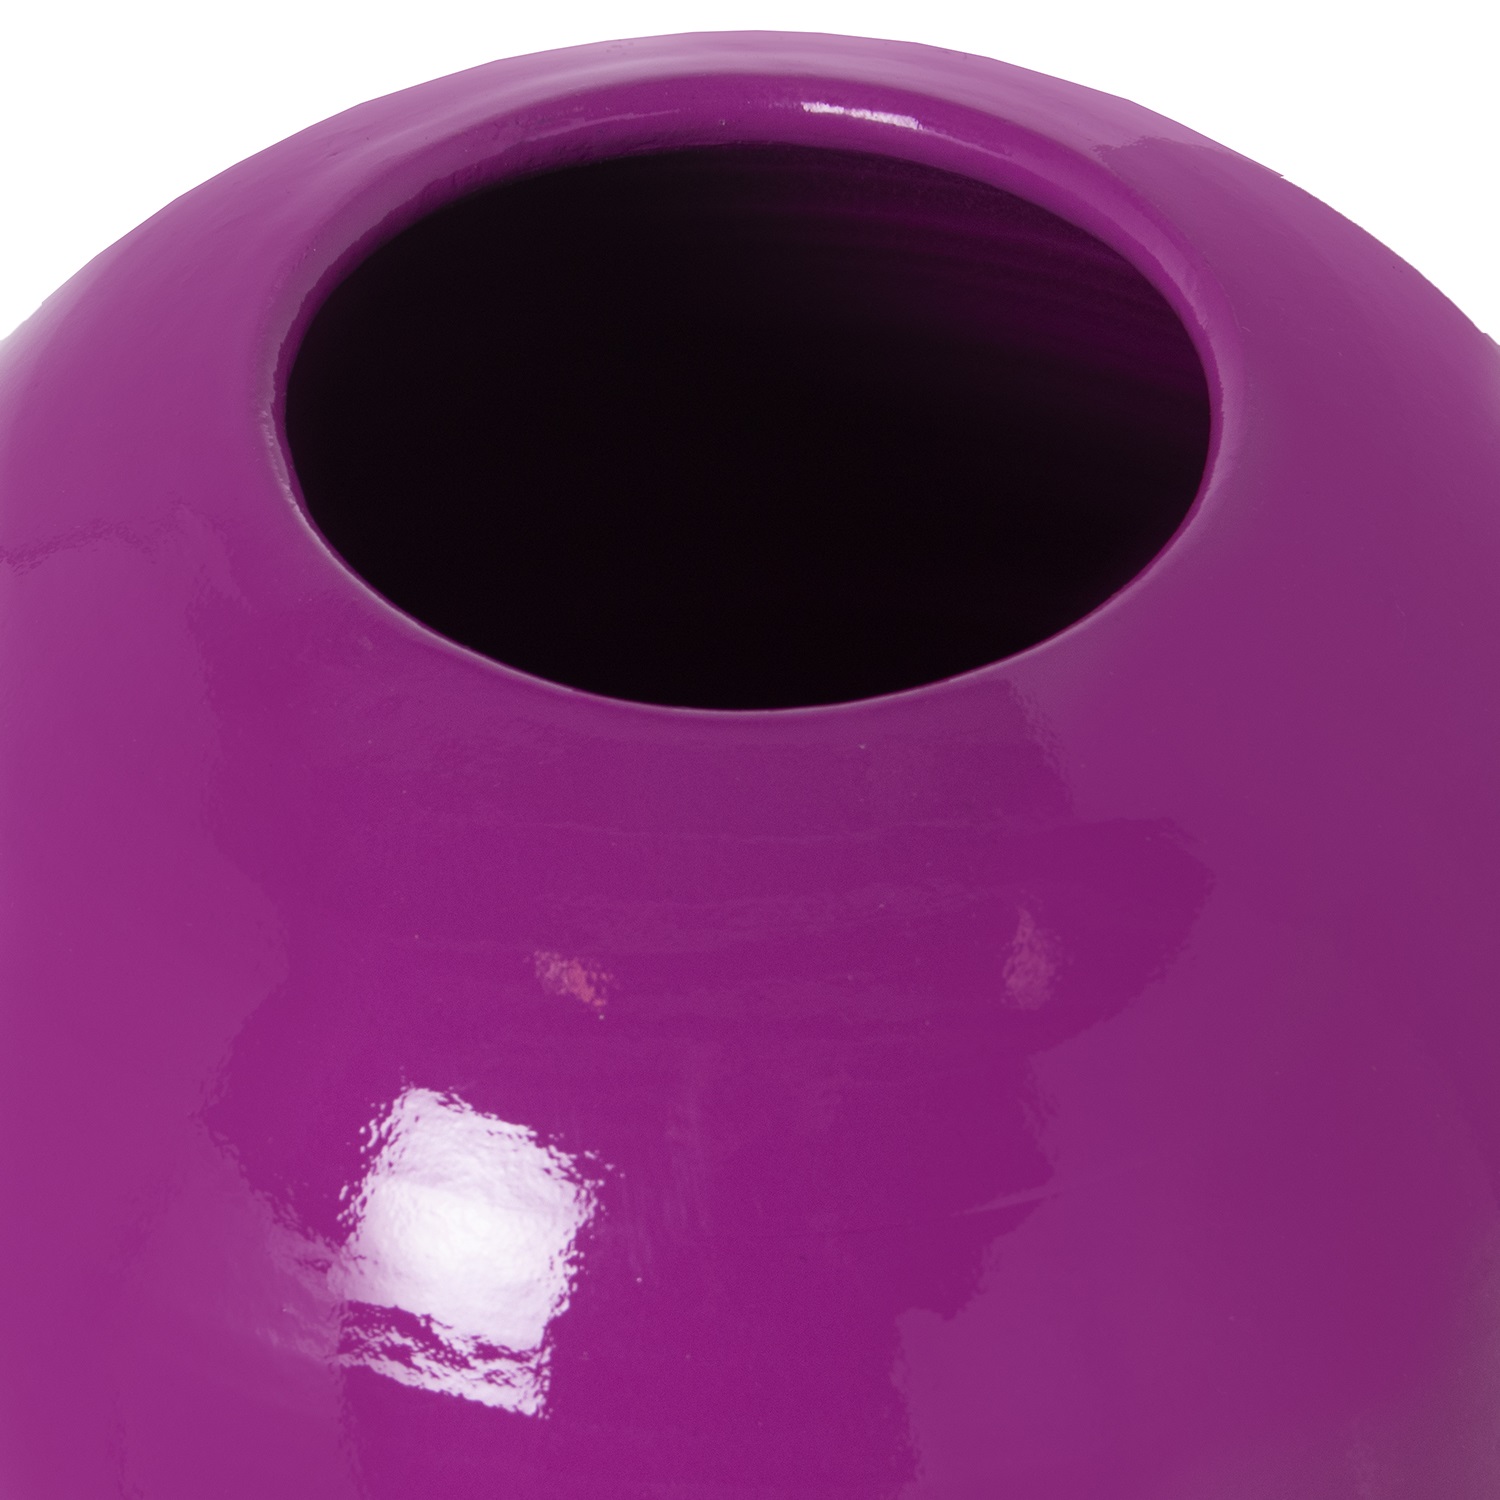 33996-jarron-violeta-brillo-60-cm-1.jpg